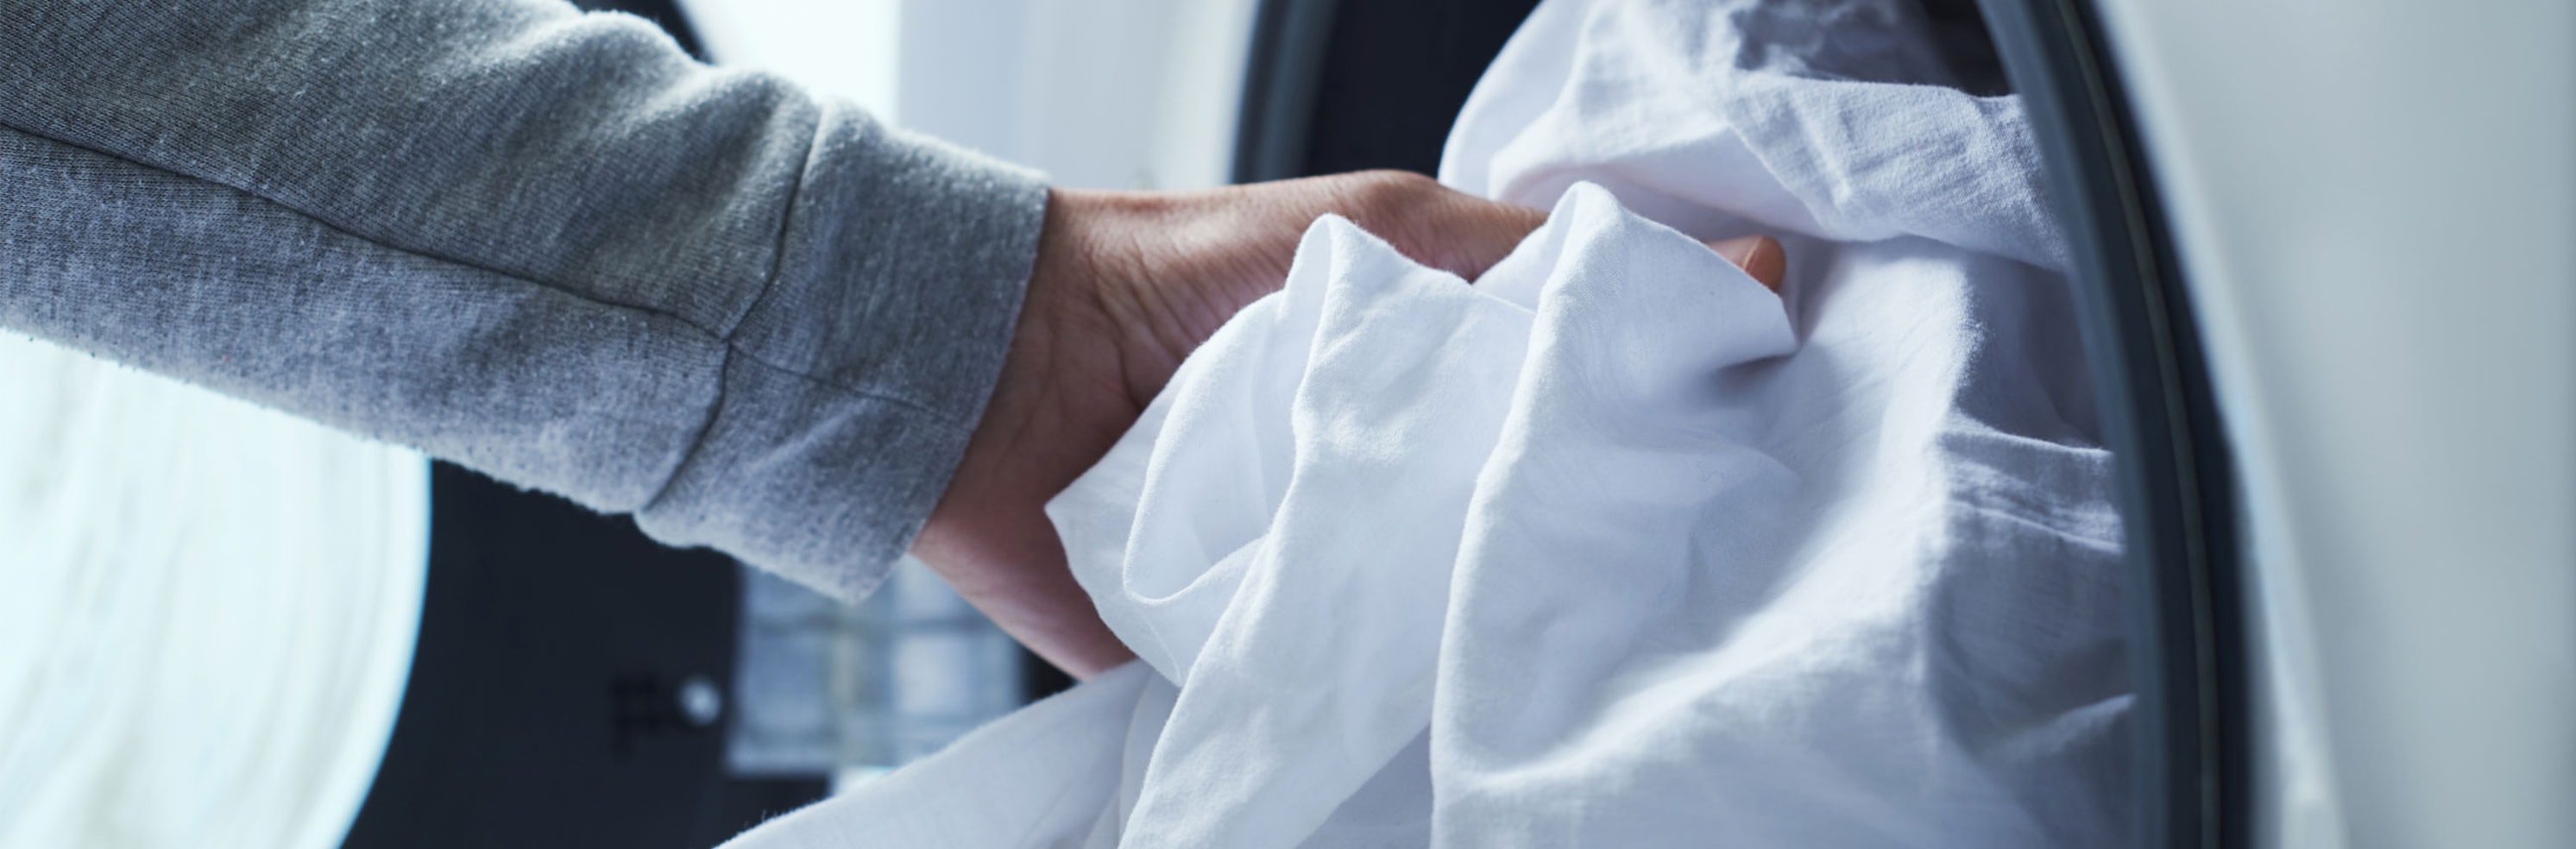 Sådan vasker du dit tøj | Læs på Bilka.dk